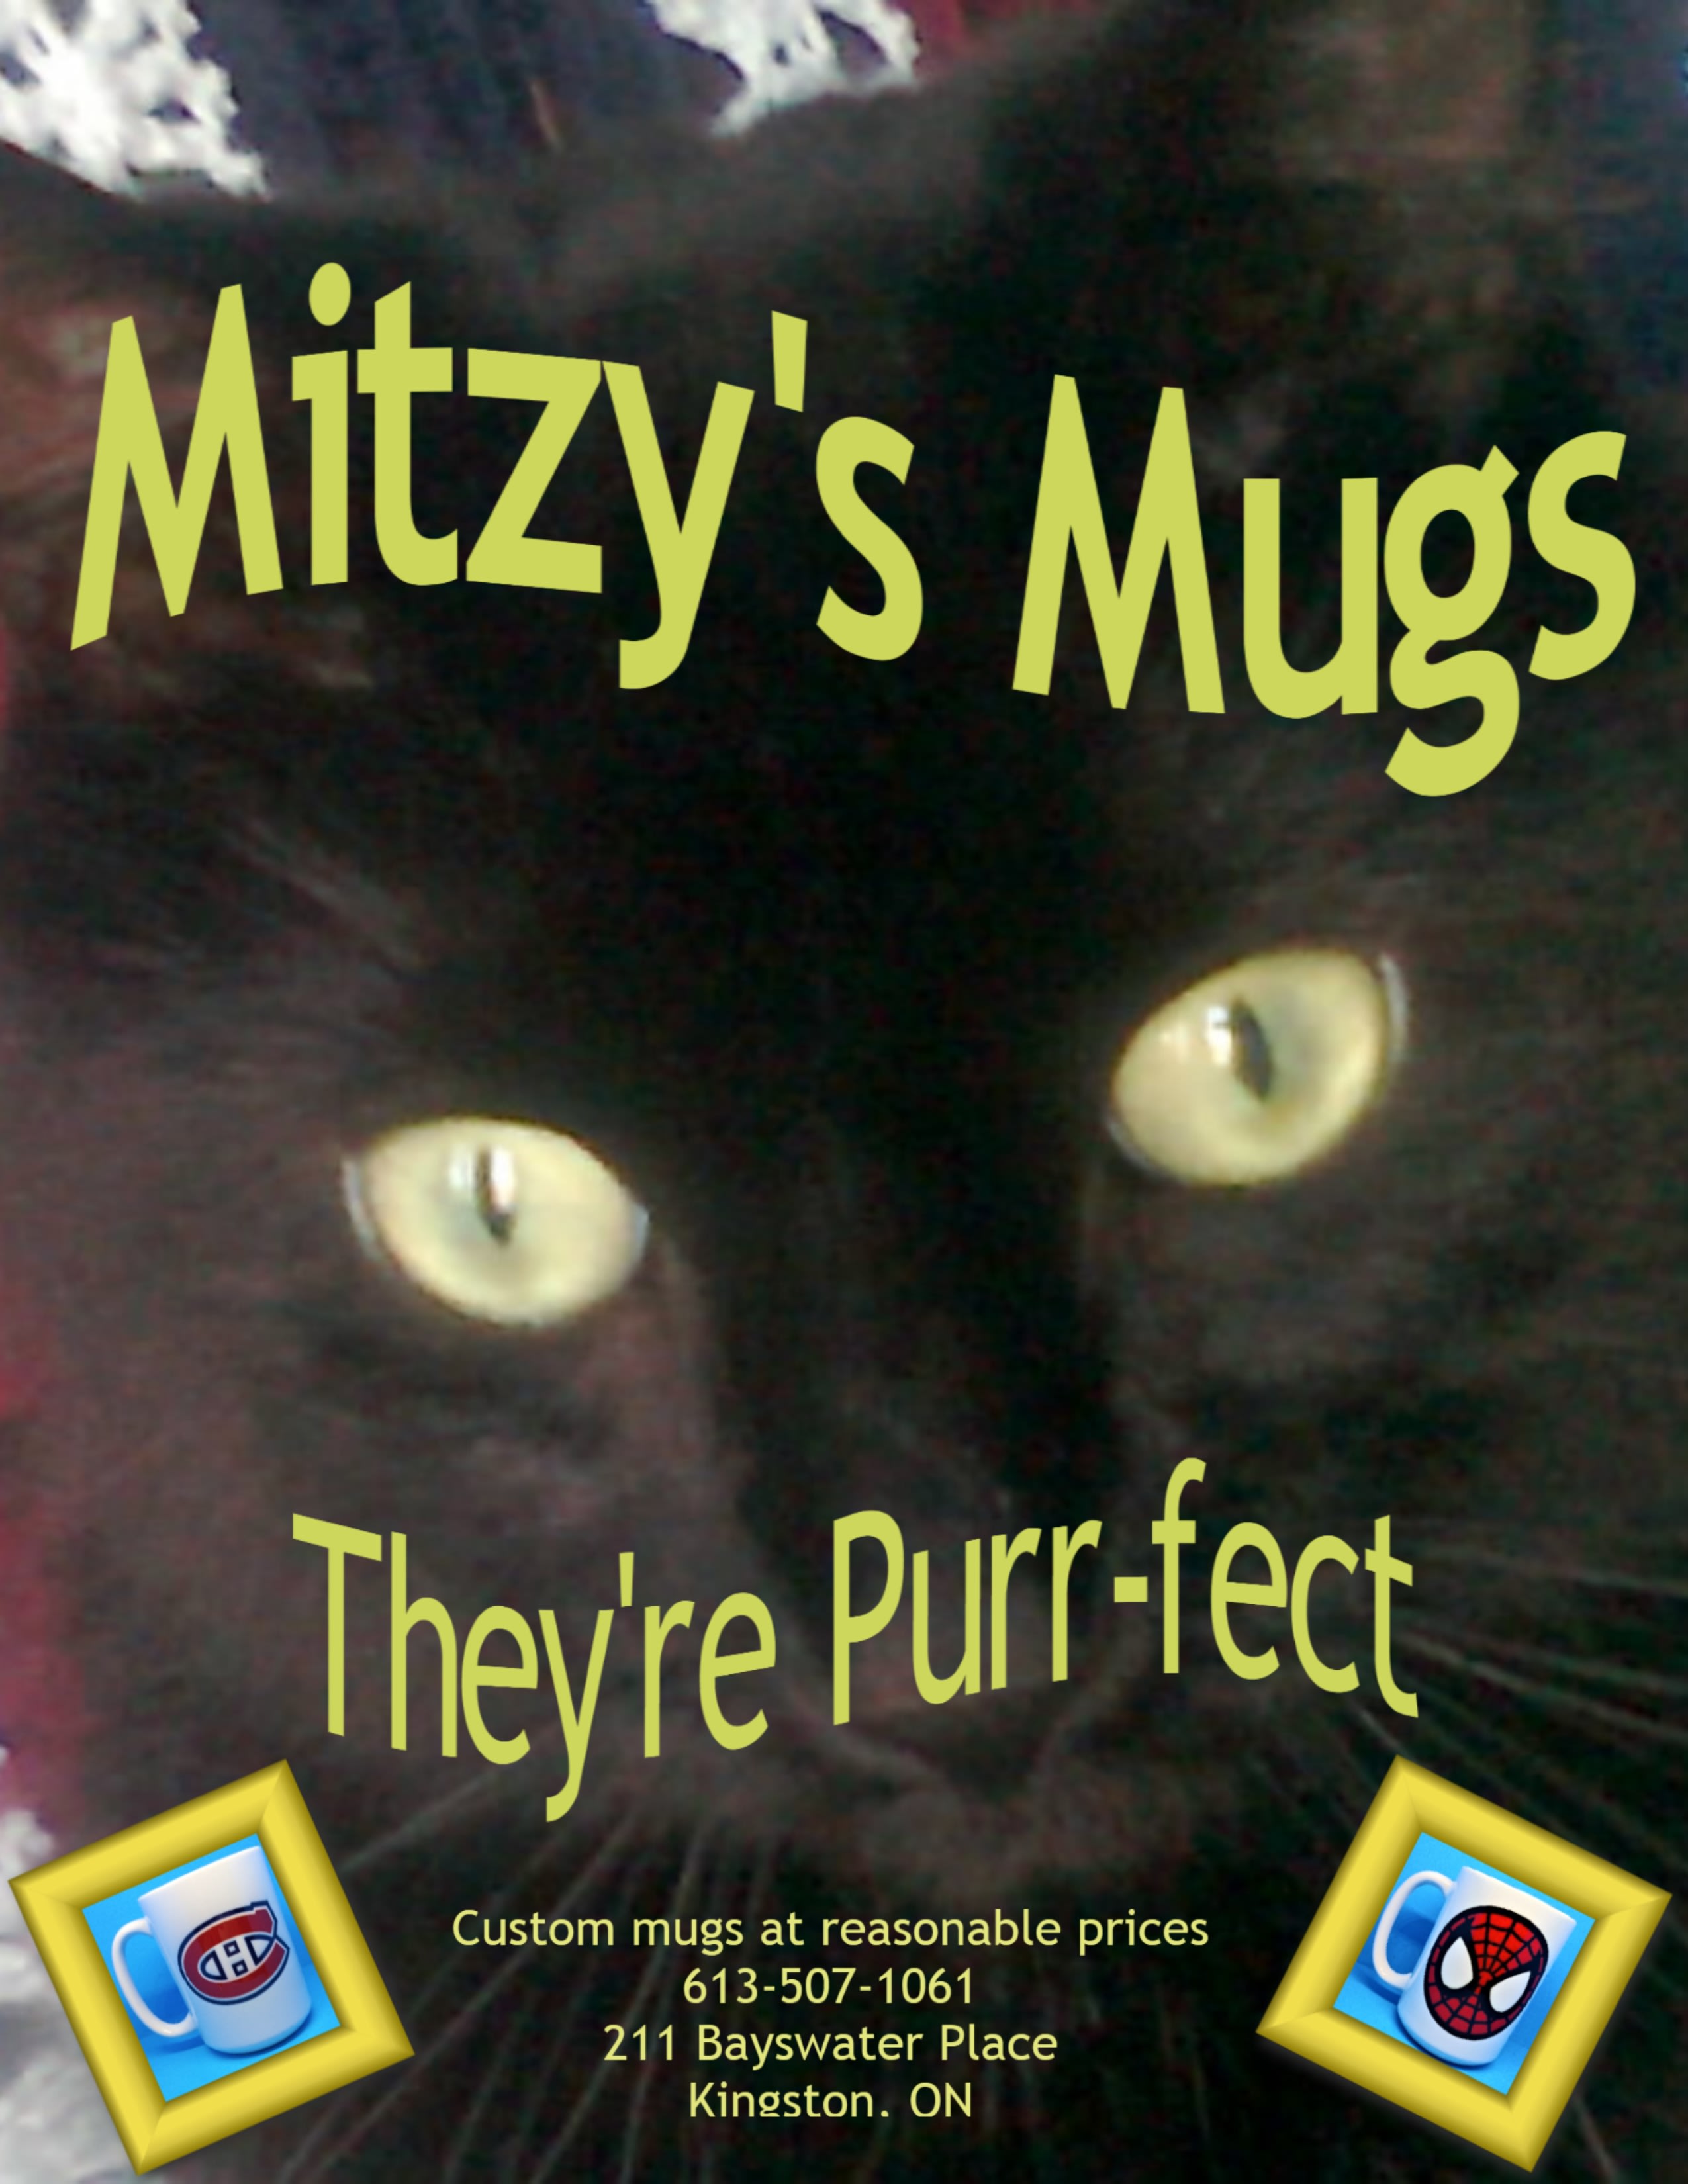 Mitz's Mugs